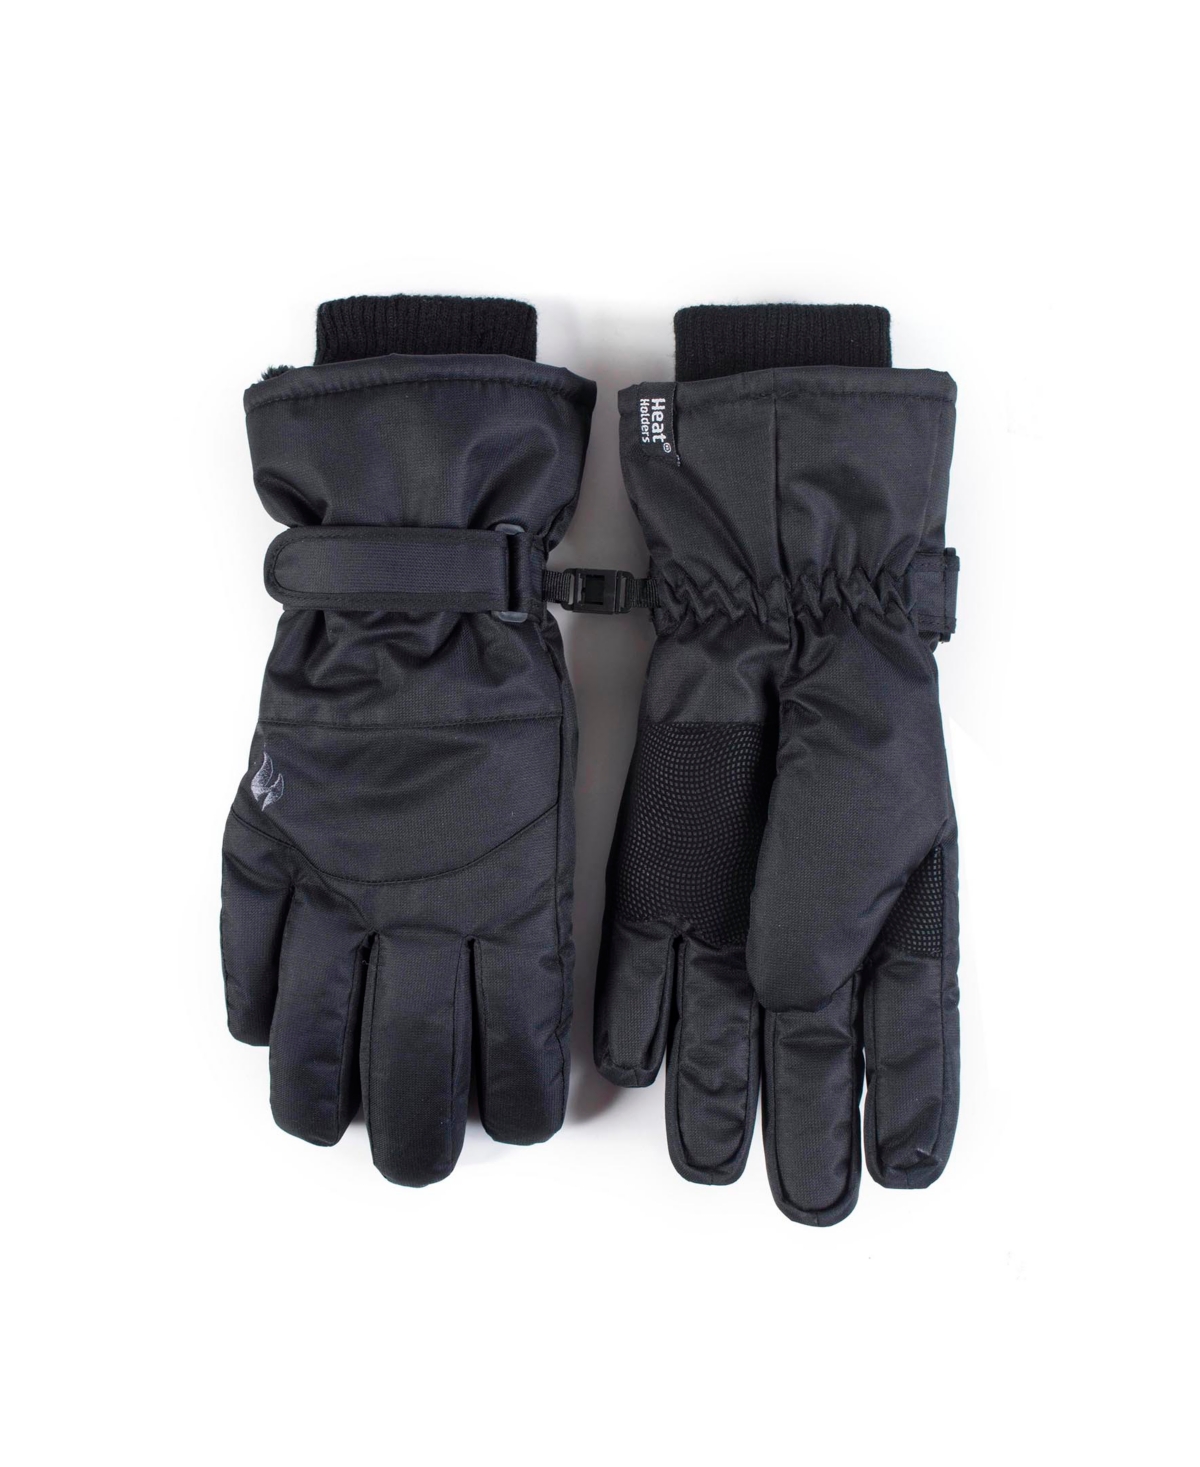 Men's Performance Gloves - Black